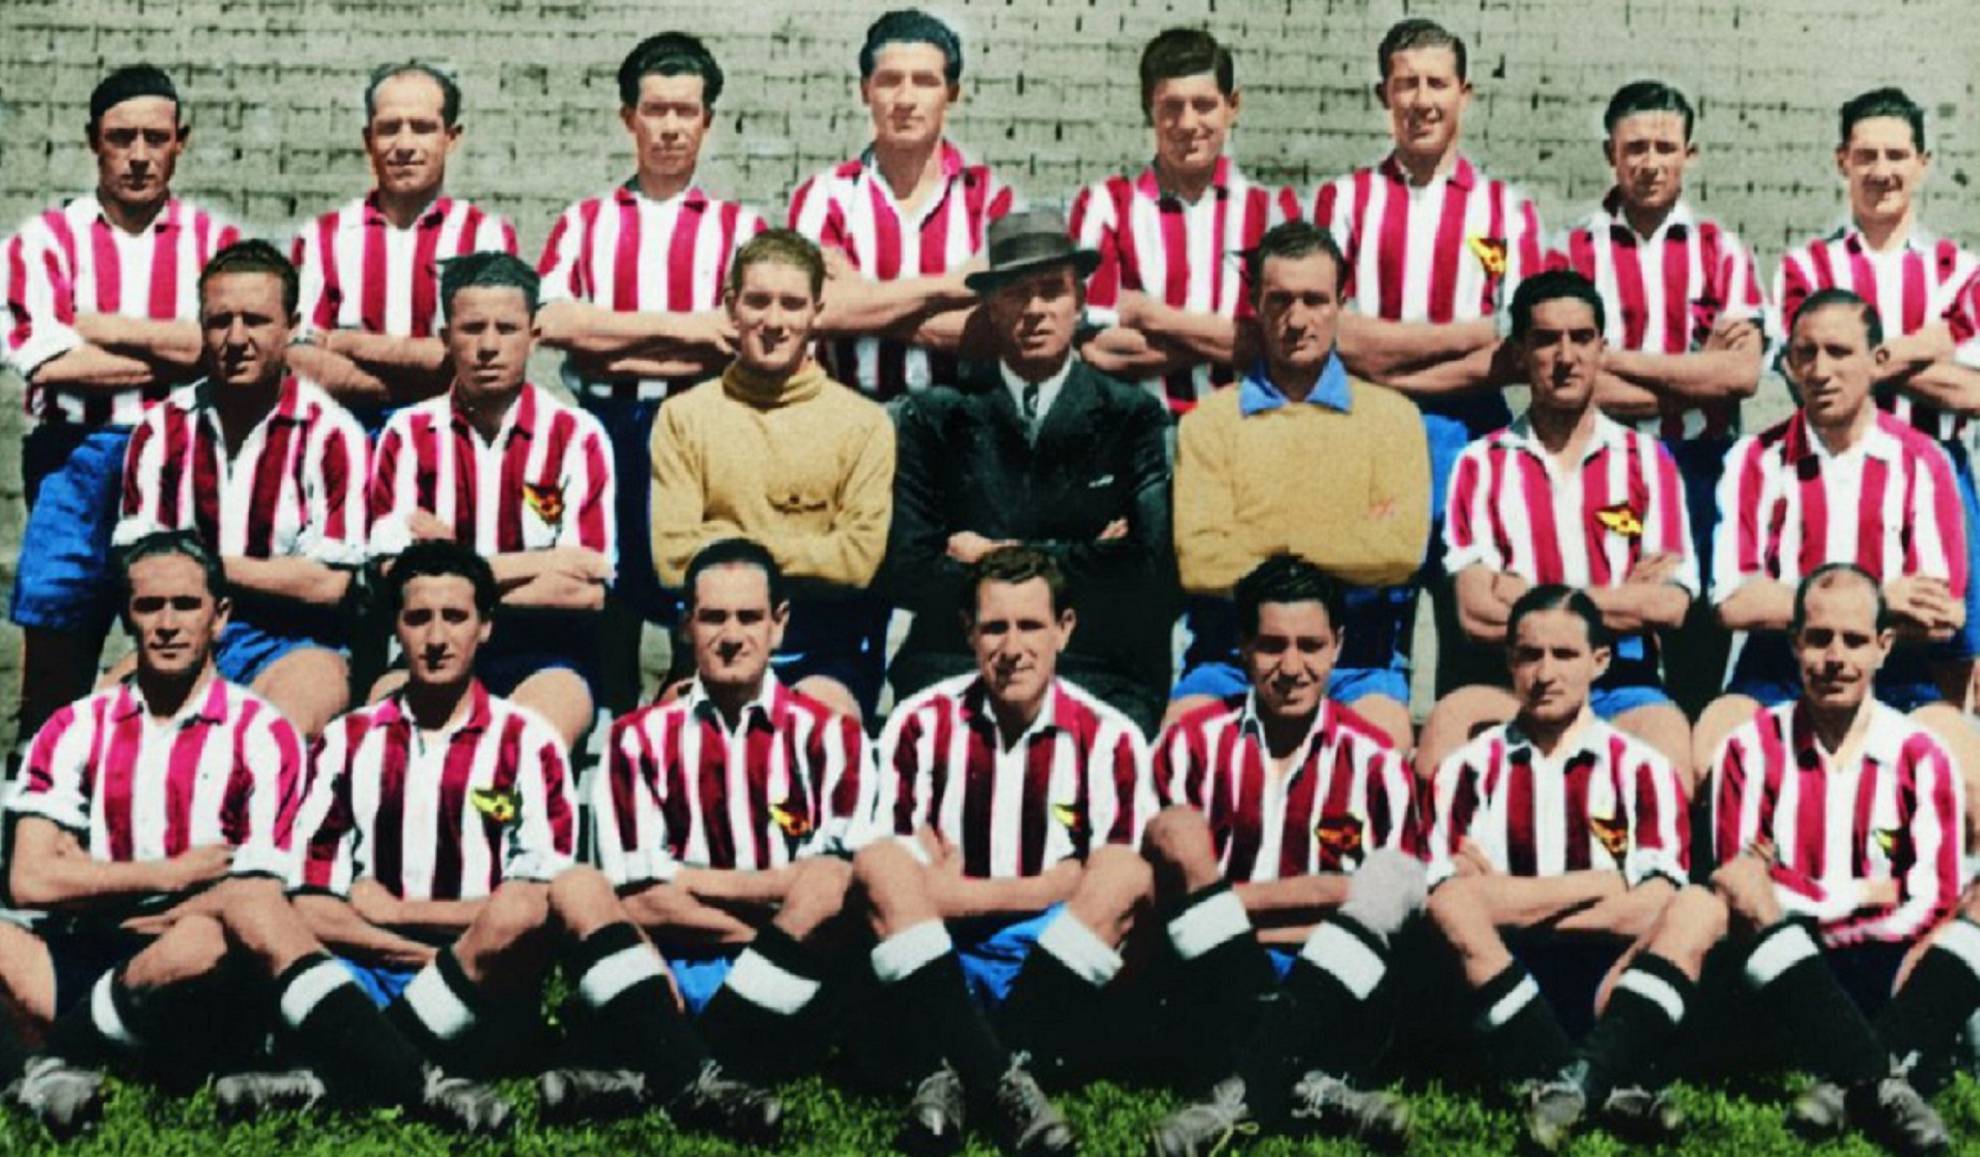 La plantilla del Atlético Aviación, campeones de Liga en 1940 y, además, en 1941